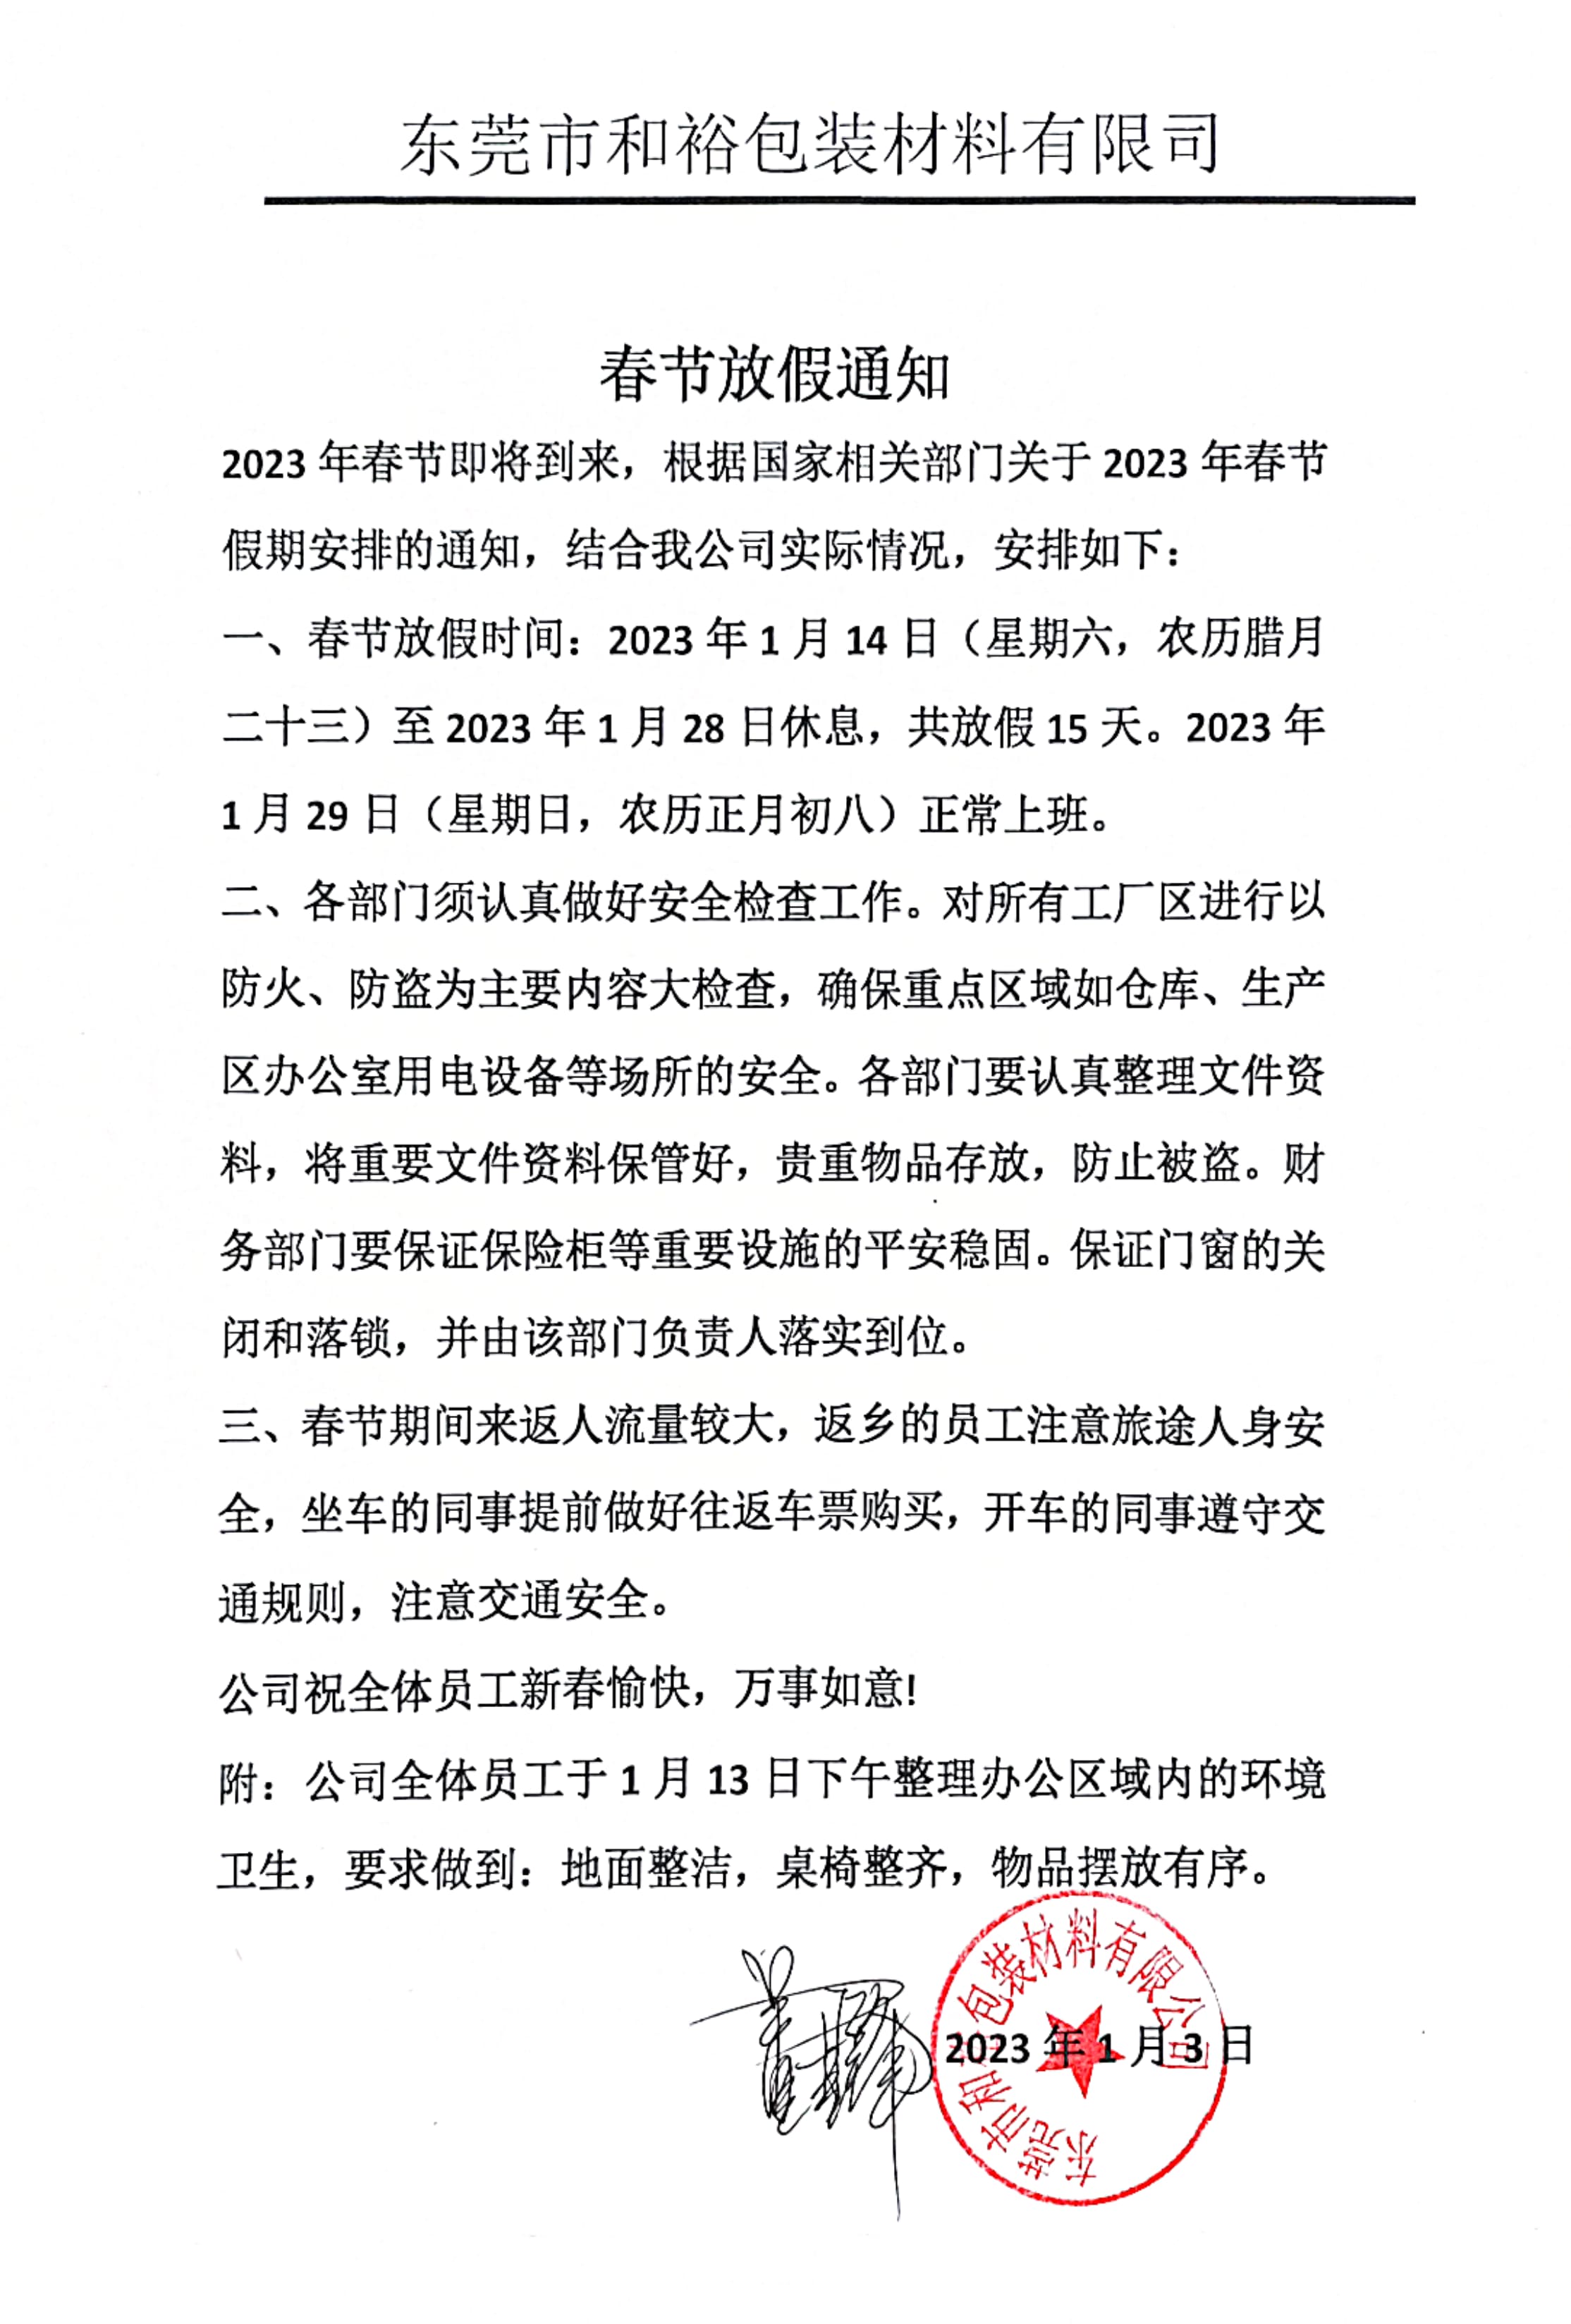 广州2023年和裕包装春节放假通知